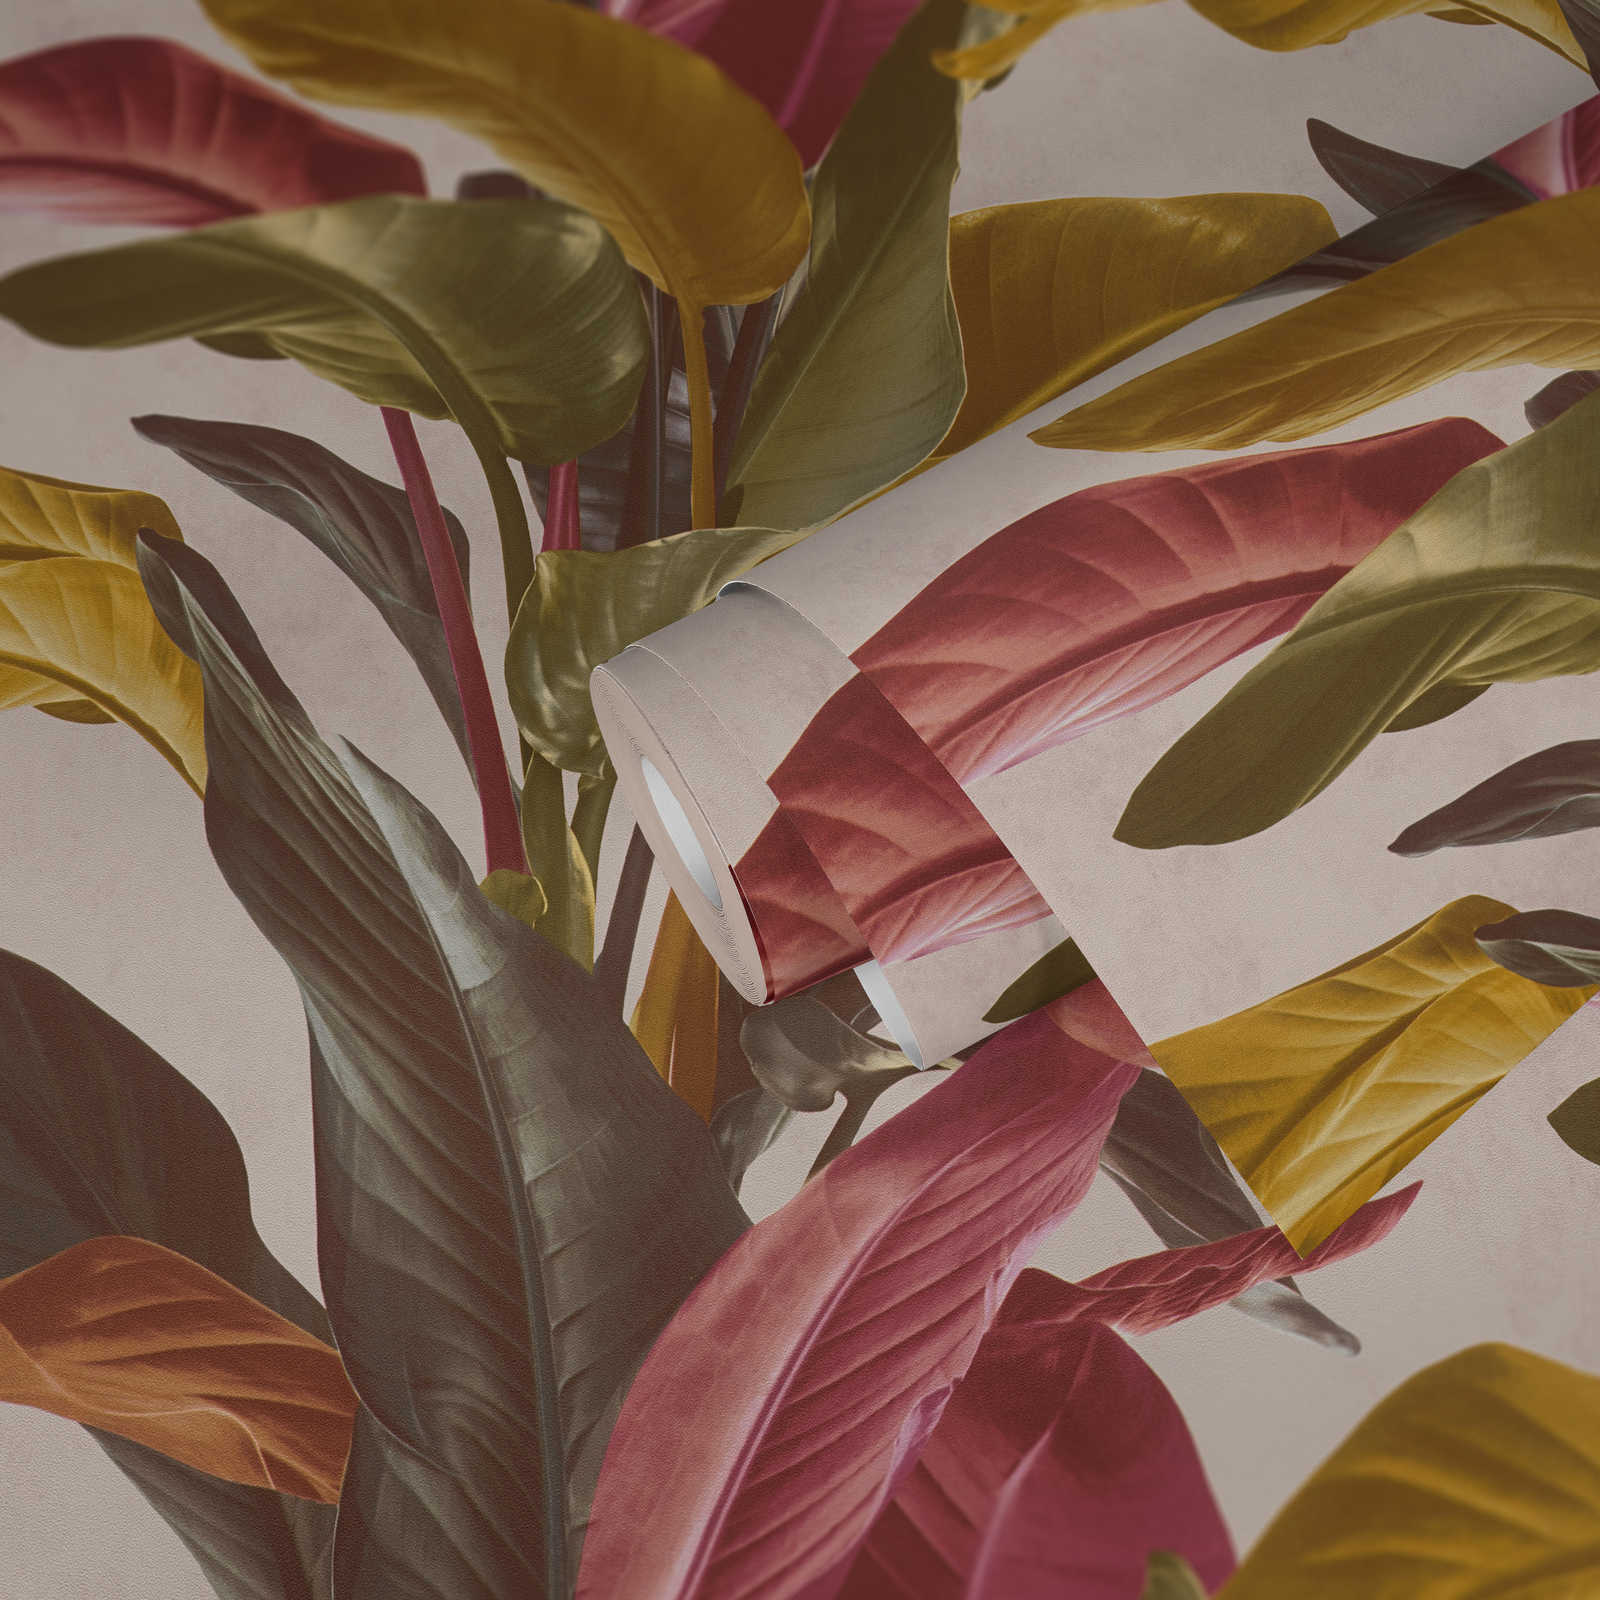             Papel pintado de hojas de colores con brillo mate de seda - marrón, naranja, rojo
        